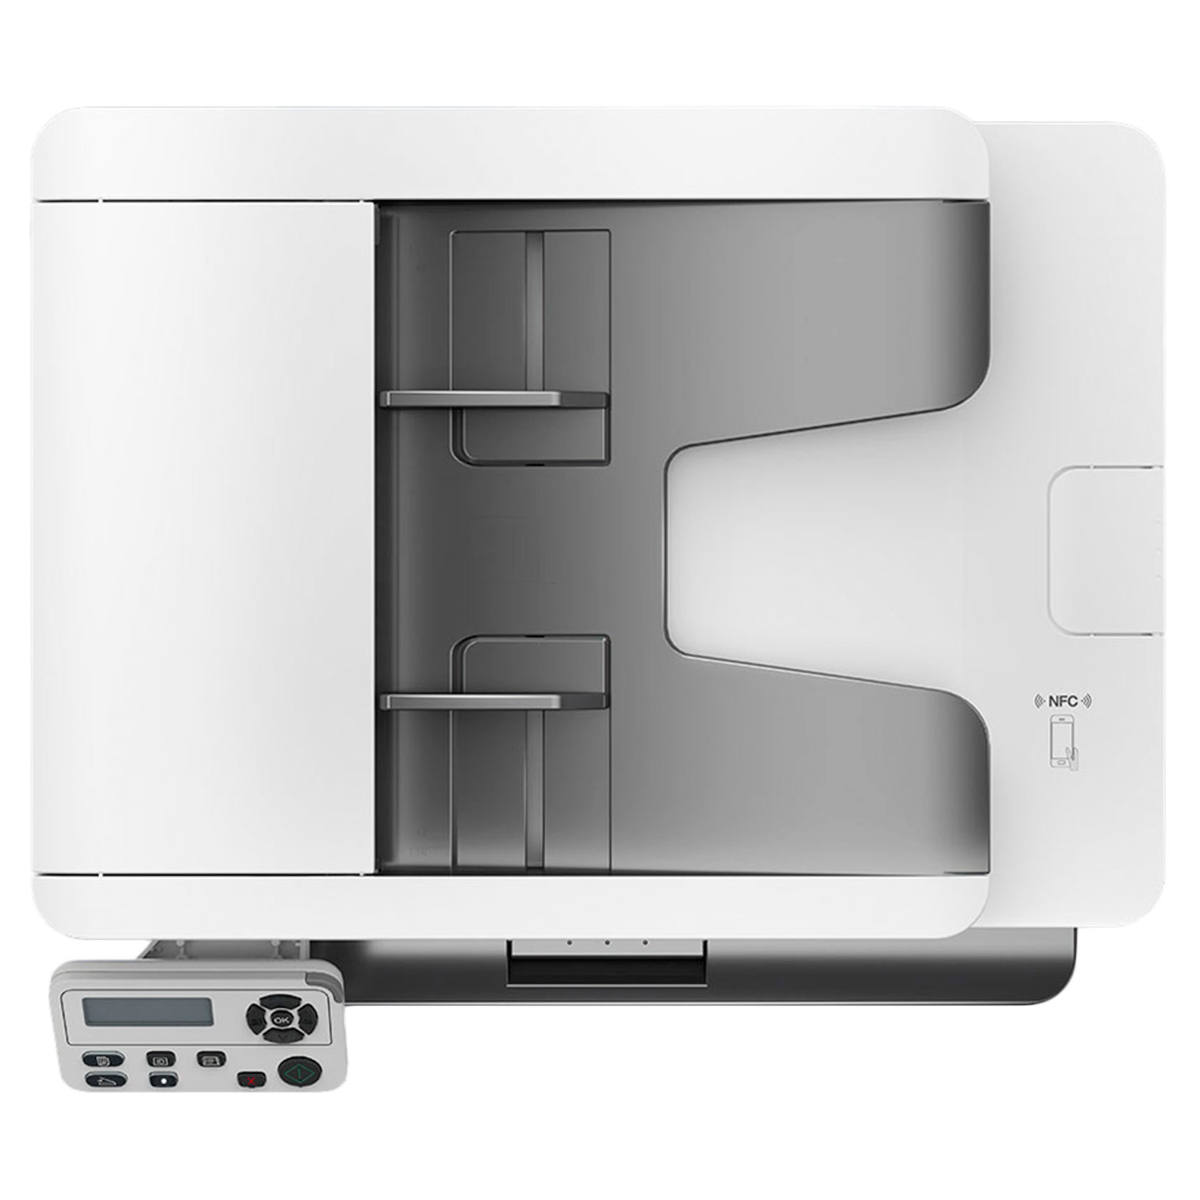 Impressora Multifuncional Laser Pantum BM5100adw 3 em 1 + ADF com Auto Duplex Conexão Wi-Fi USB Mono 110V